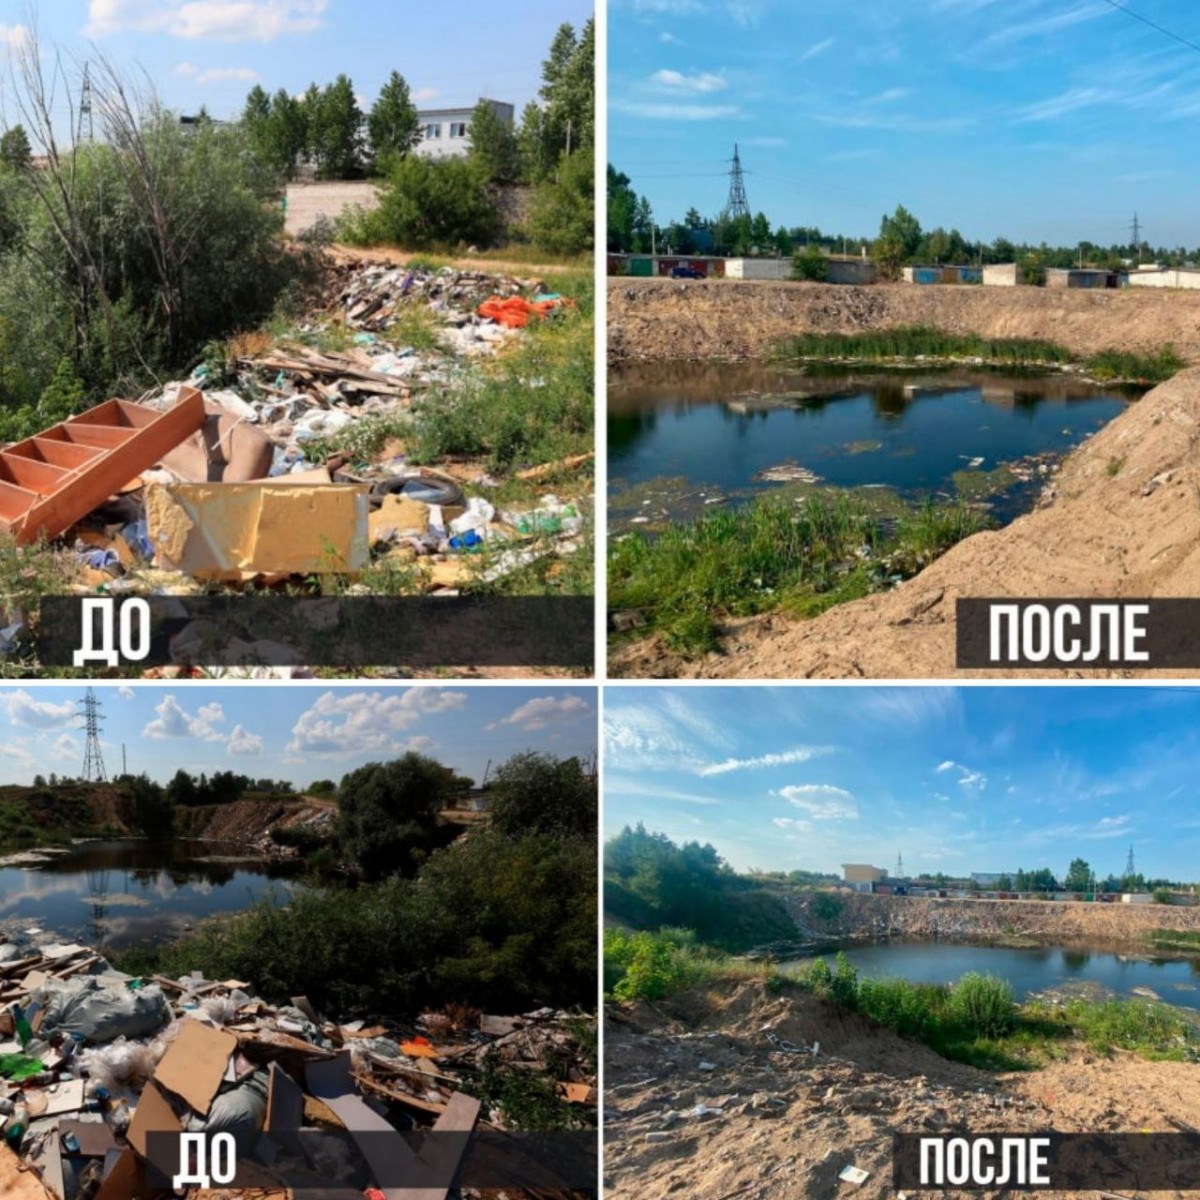 Административный протокол составили на жителя Дзержинска за незаконный сброс мусора в котлован